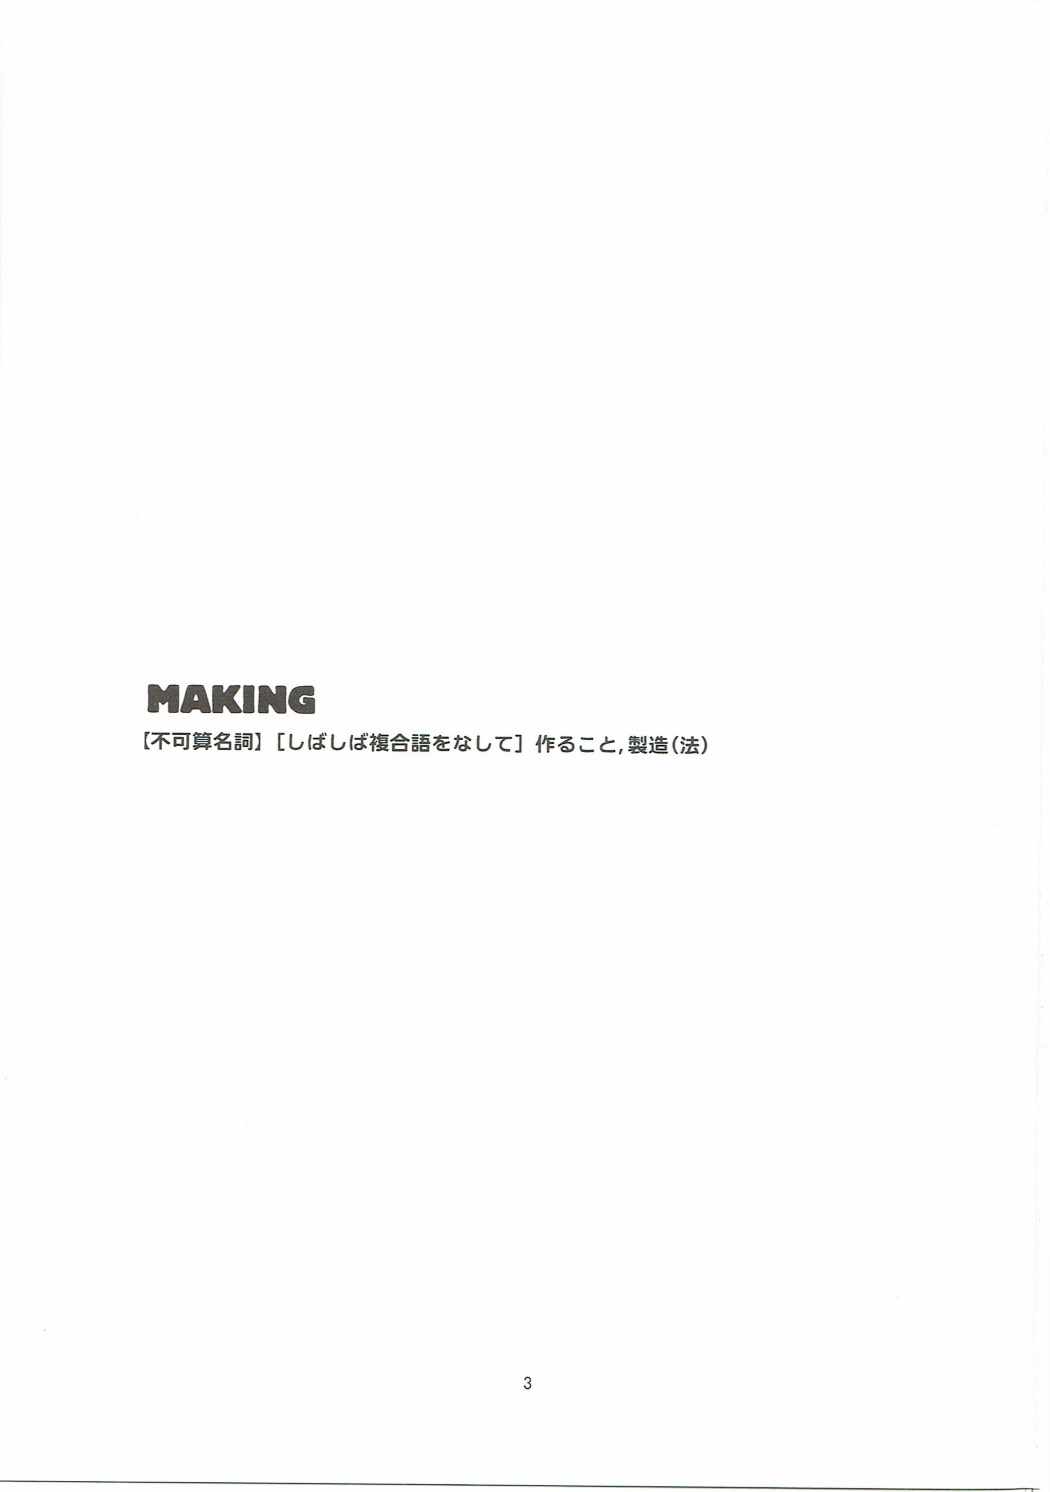 (C88) [a440 (あうら)] making (ドラゴンクエストX)